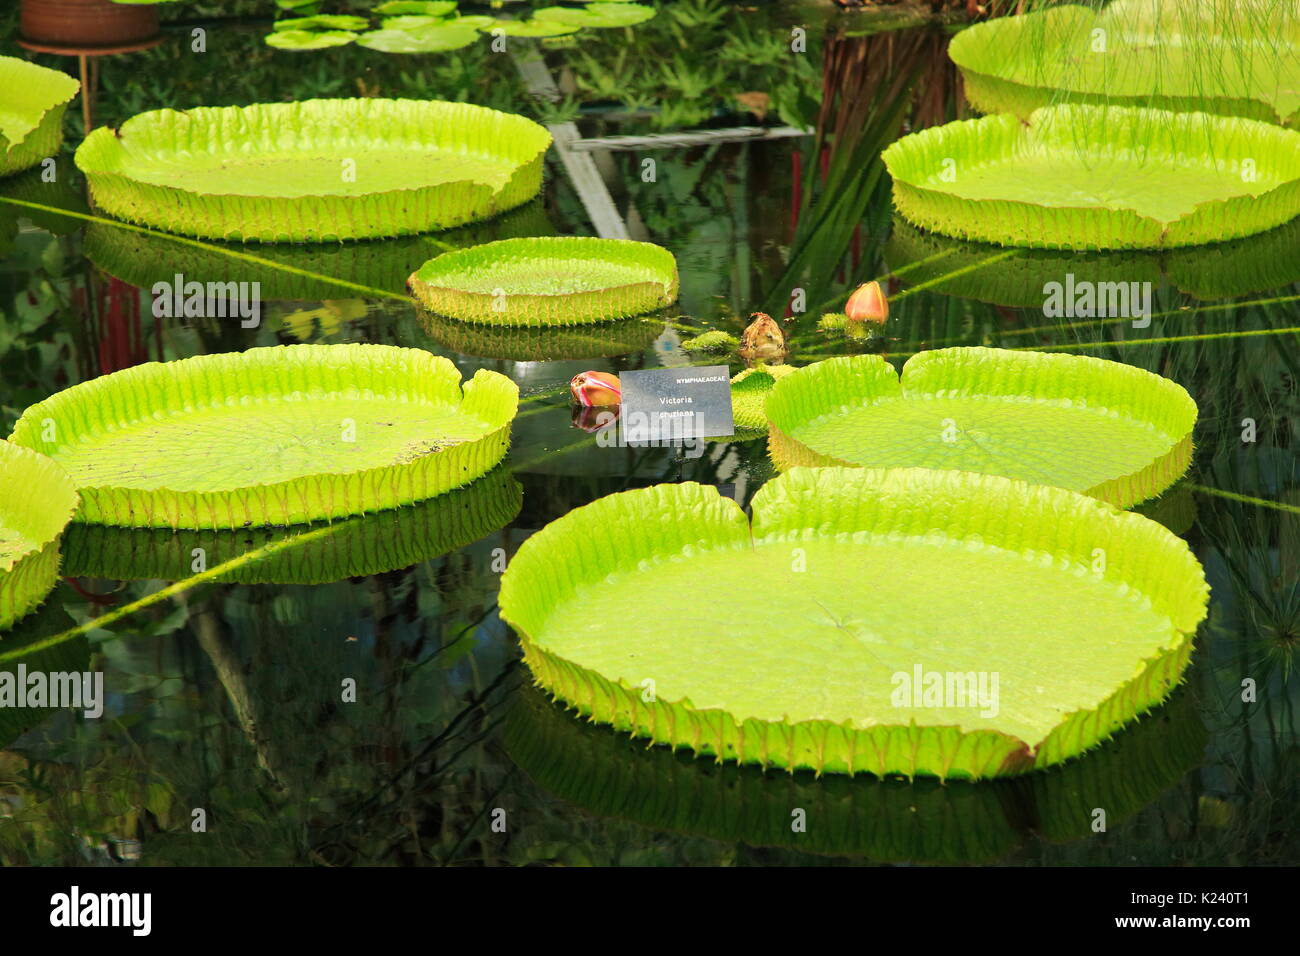 Amazon Victoria cruziana nénuphar feuilles flottantes, de l'eau Lily House, Royal Botanic Gardens, Kew, Londres, Angleterre, Royaume-Uni Banque D'Images